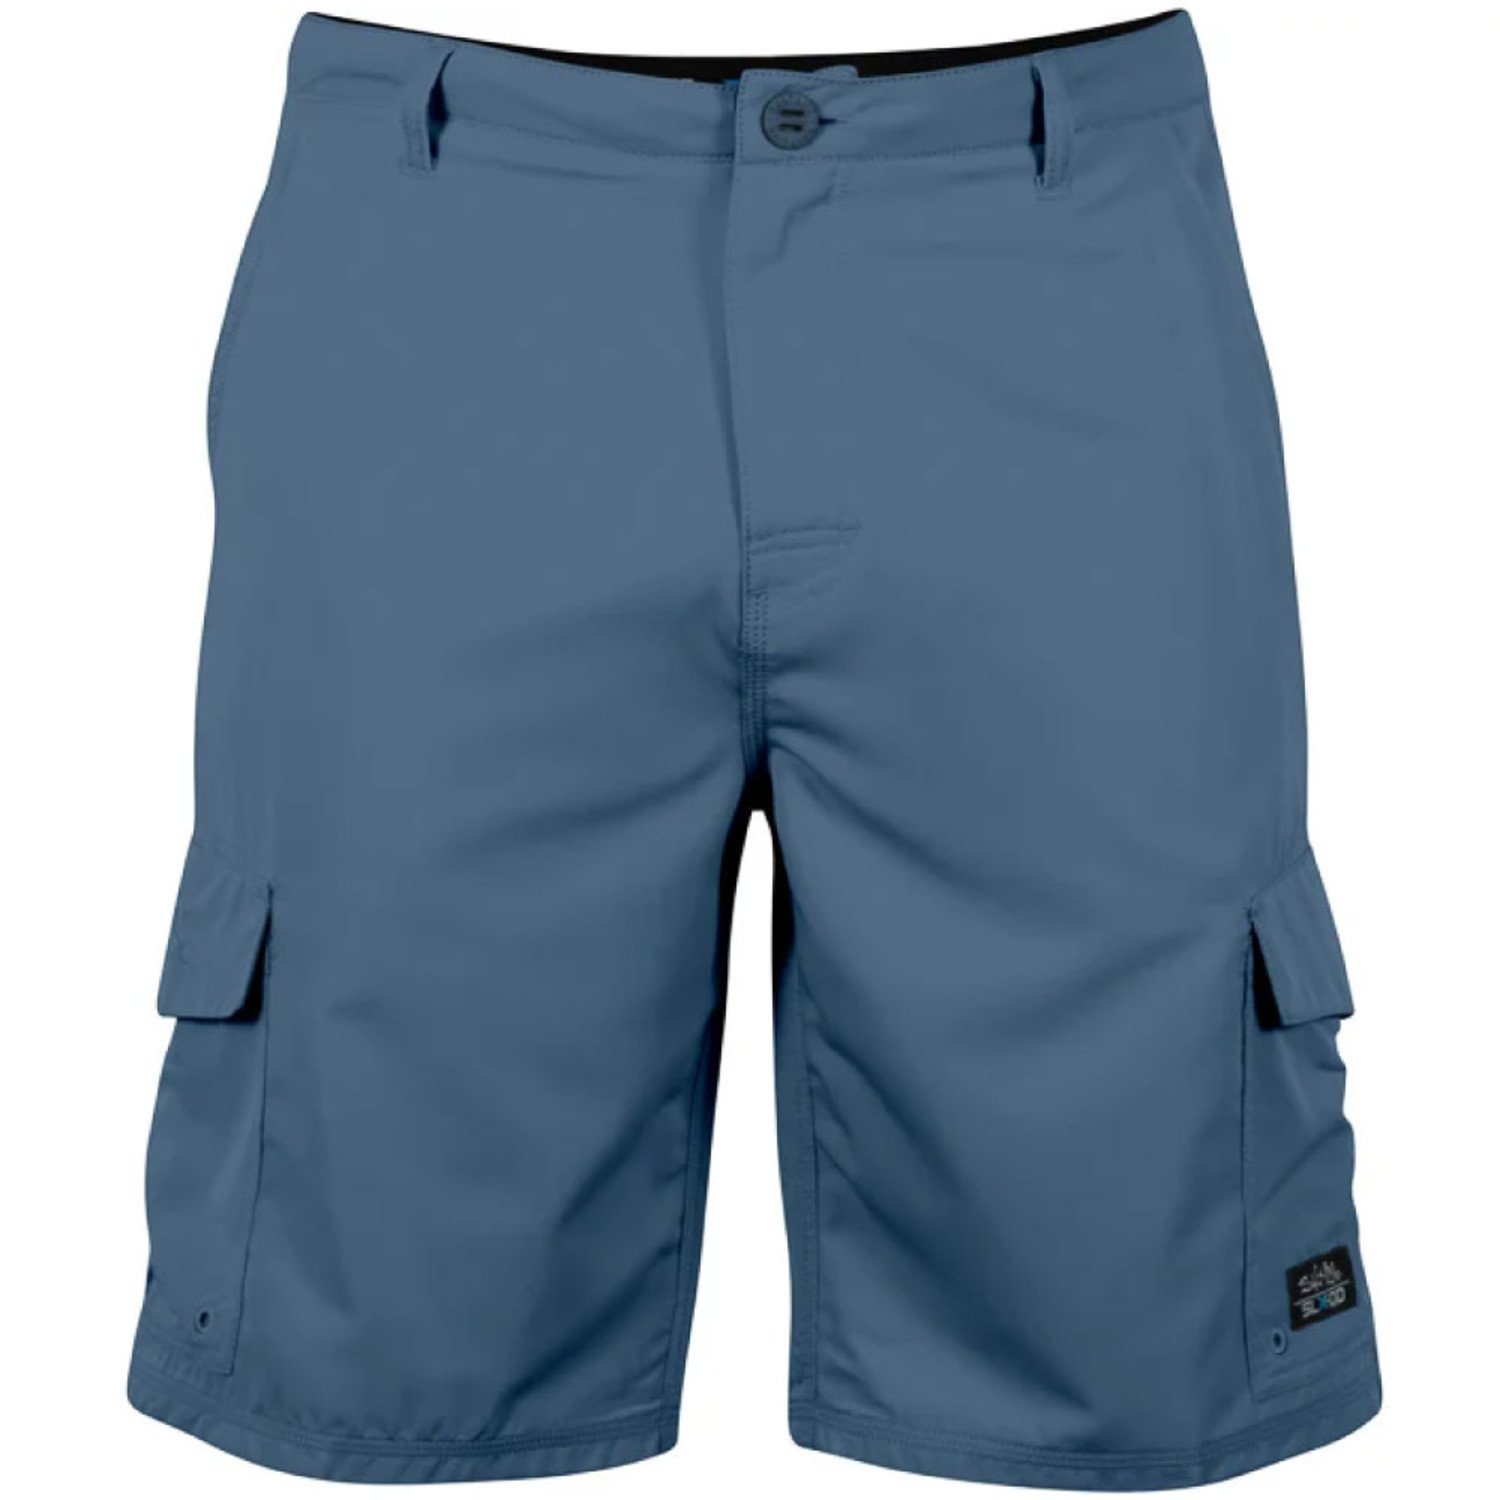 Salt Life Men's La Vida Fishing Board Shorts, Size 40, Grey